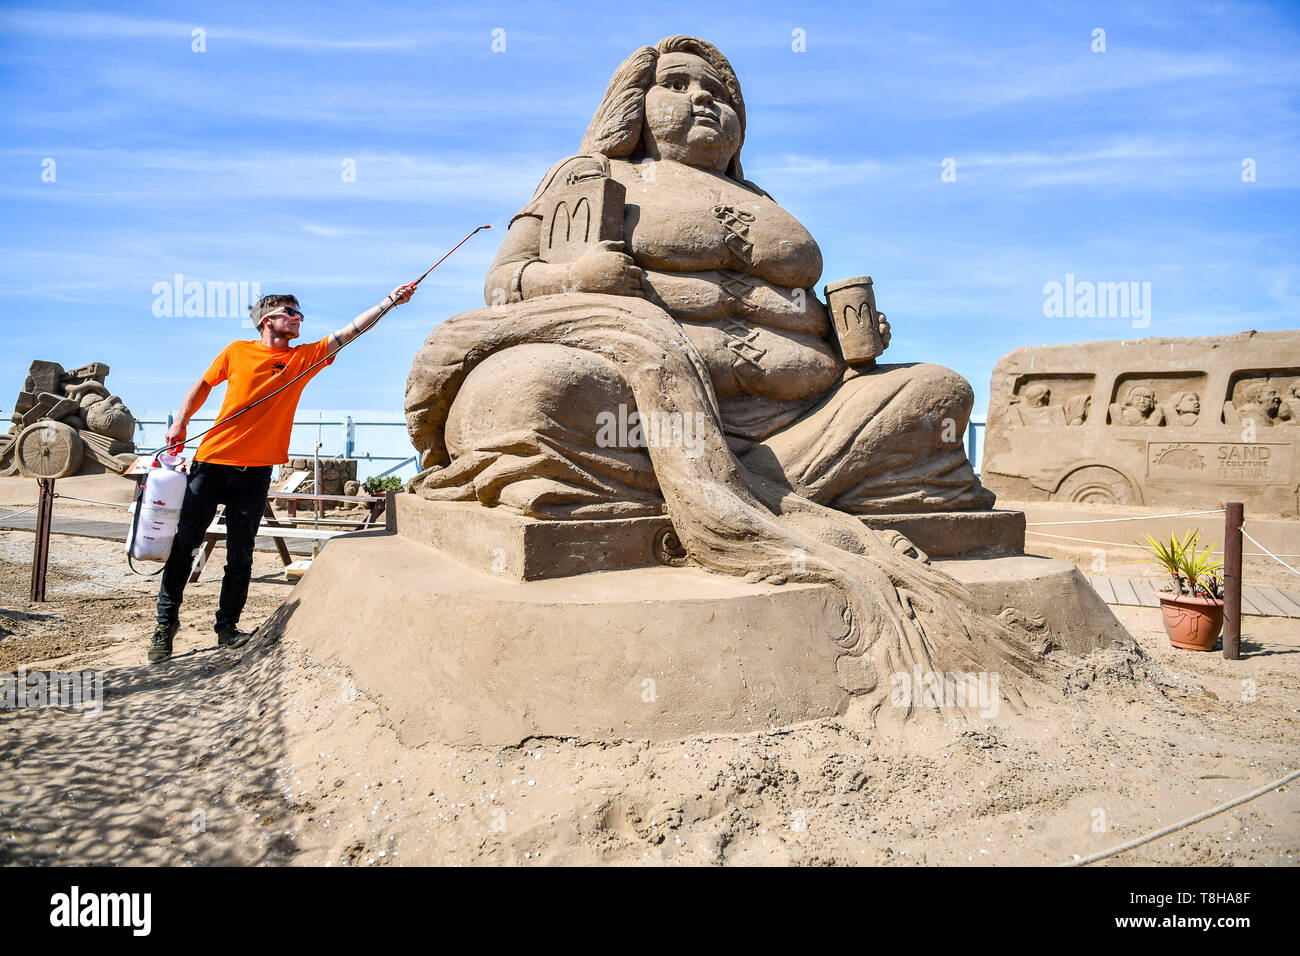 Les pulvérisations d'un travailleur de l'eau pour arrêter le séchage du sable sur une sculpture d'une sirène obèse holding McDonald's fast food items, au Festival de sculptures de sable, Weston Weston-super-Mare. Banque D'Images